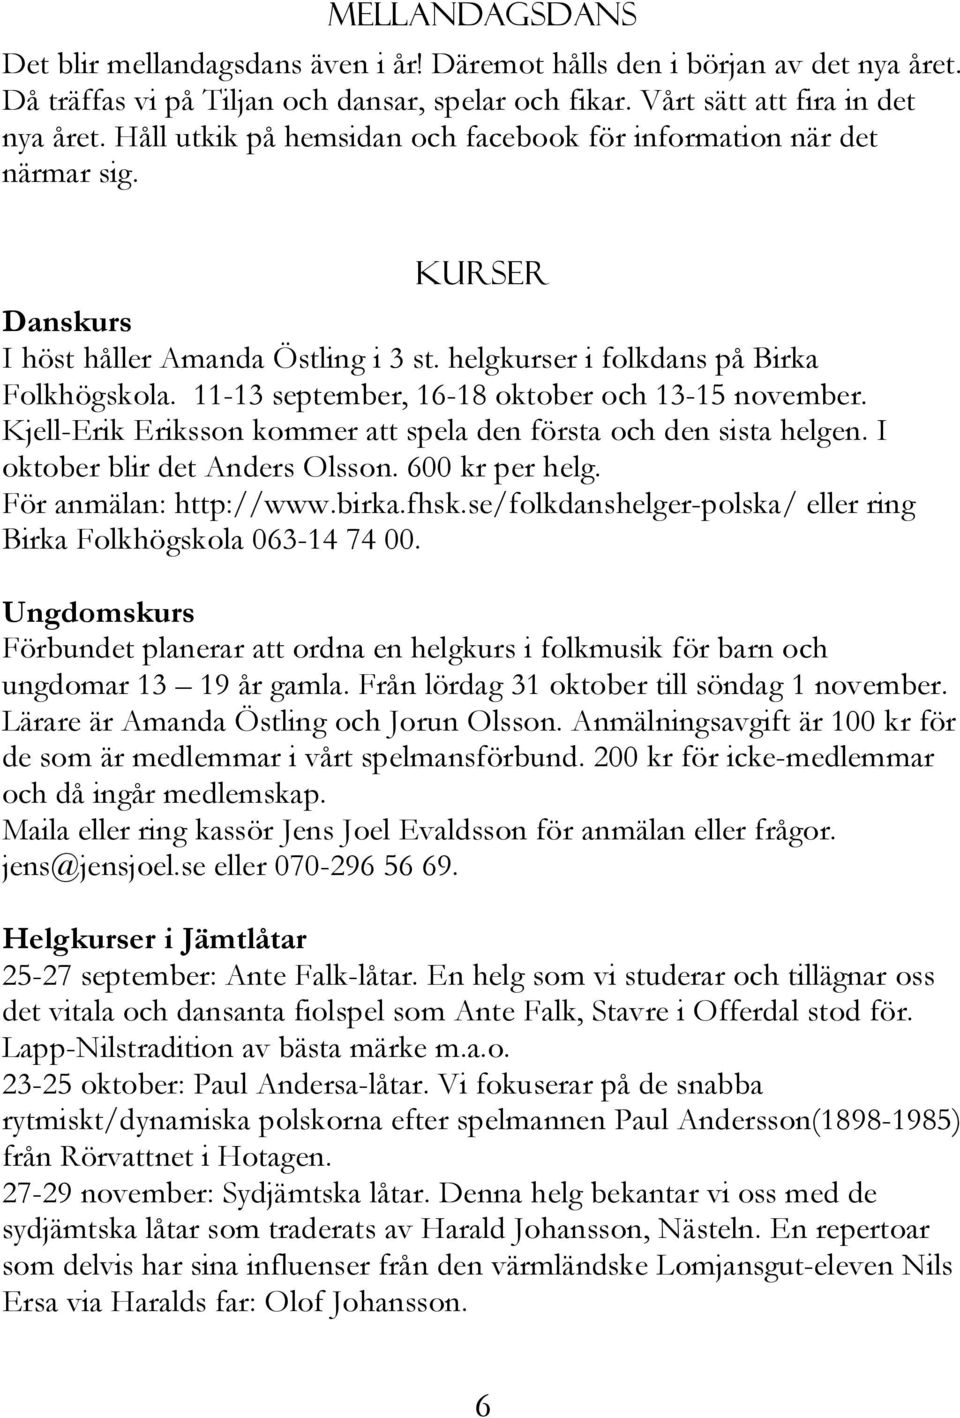 11-13 september, 16-18 oktober och 13-15 november. Kjell-Erik Eriksson kommer att spela den första och den sista helgen. I oktober blir det Anders Olsson. 600 kr per helg. För anmälan: http://www.